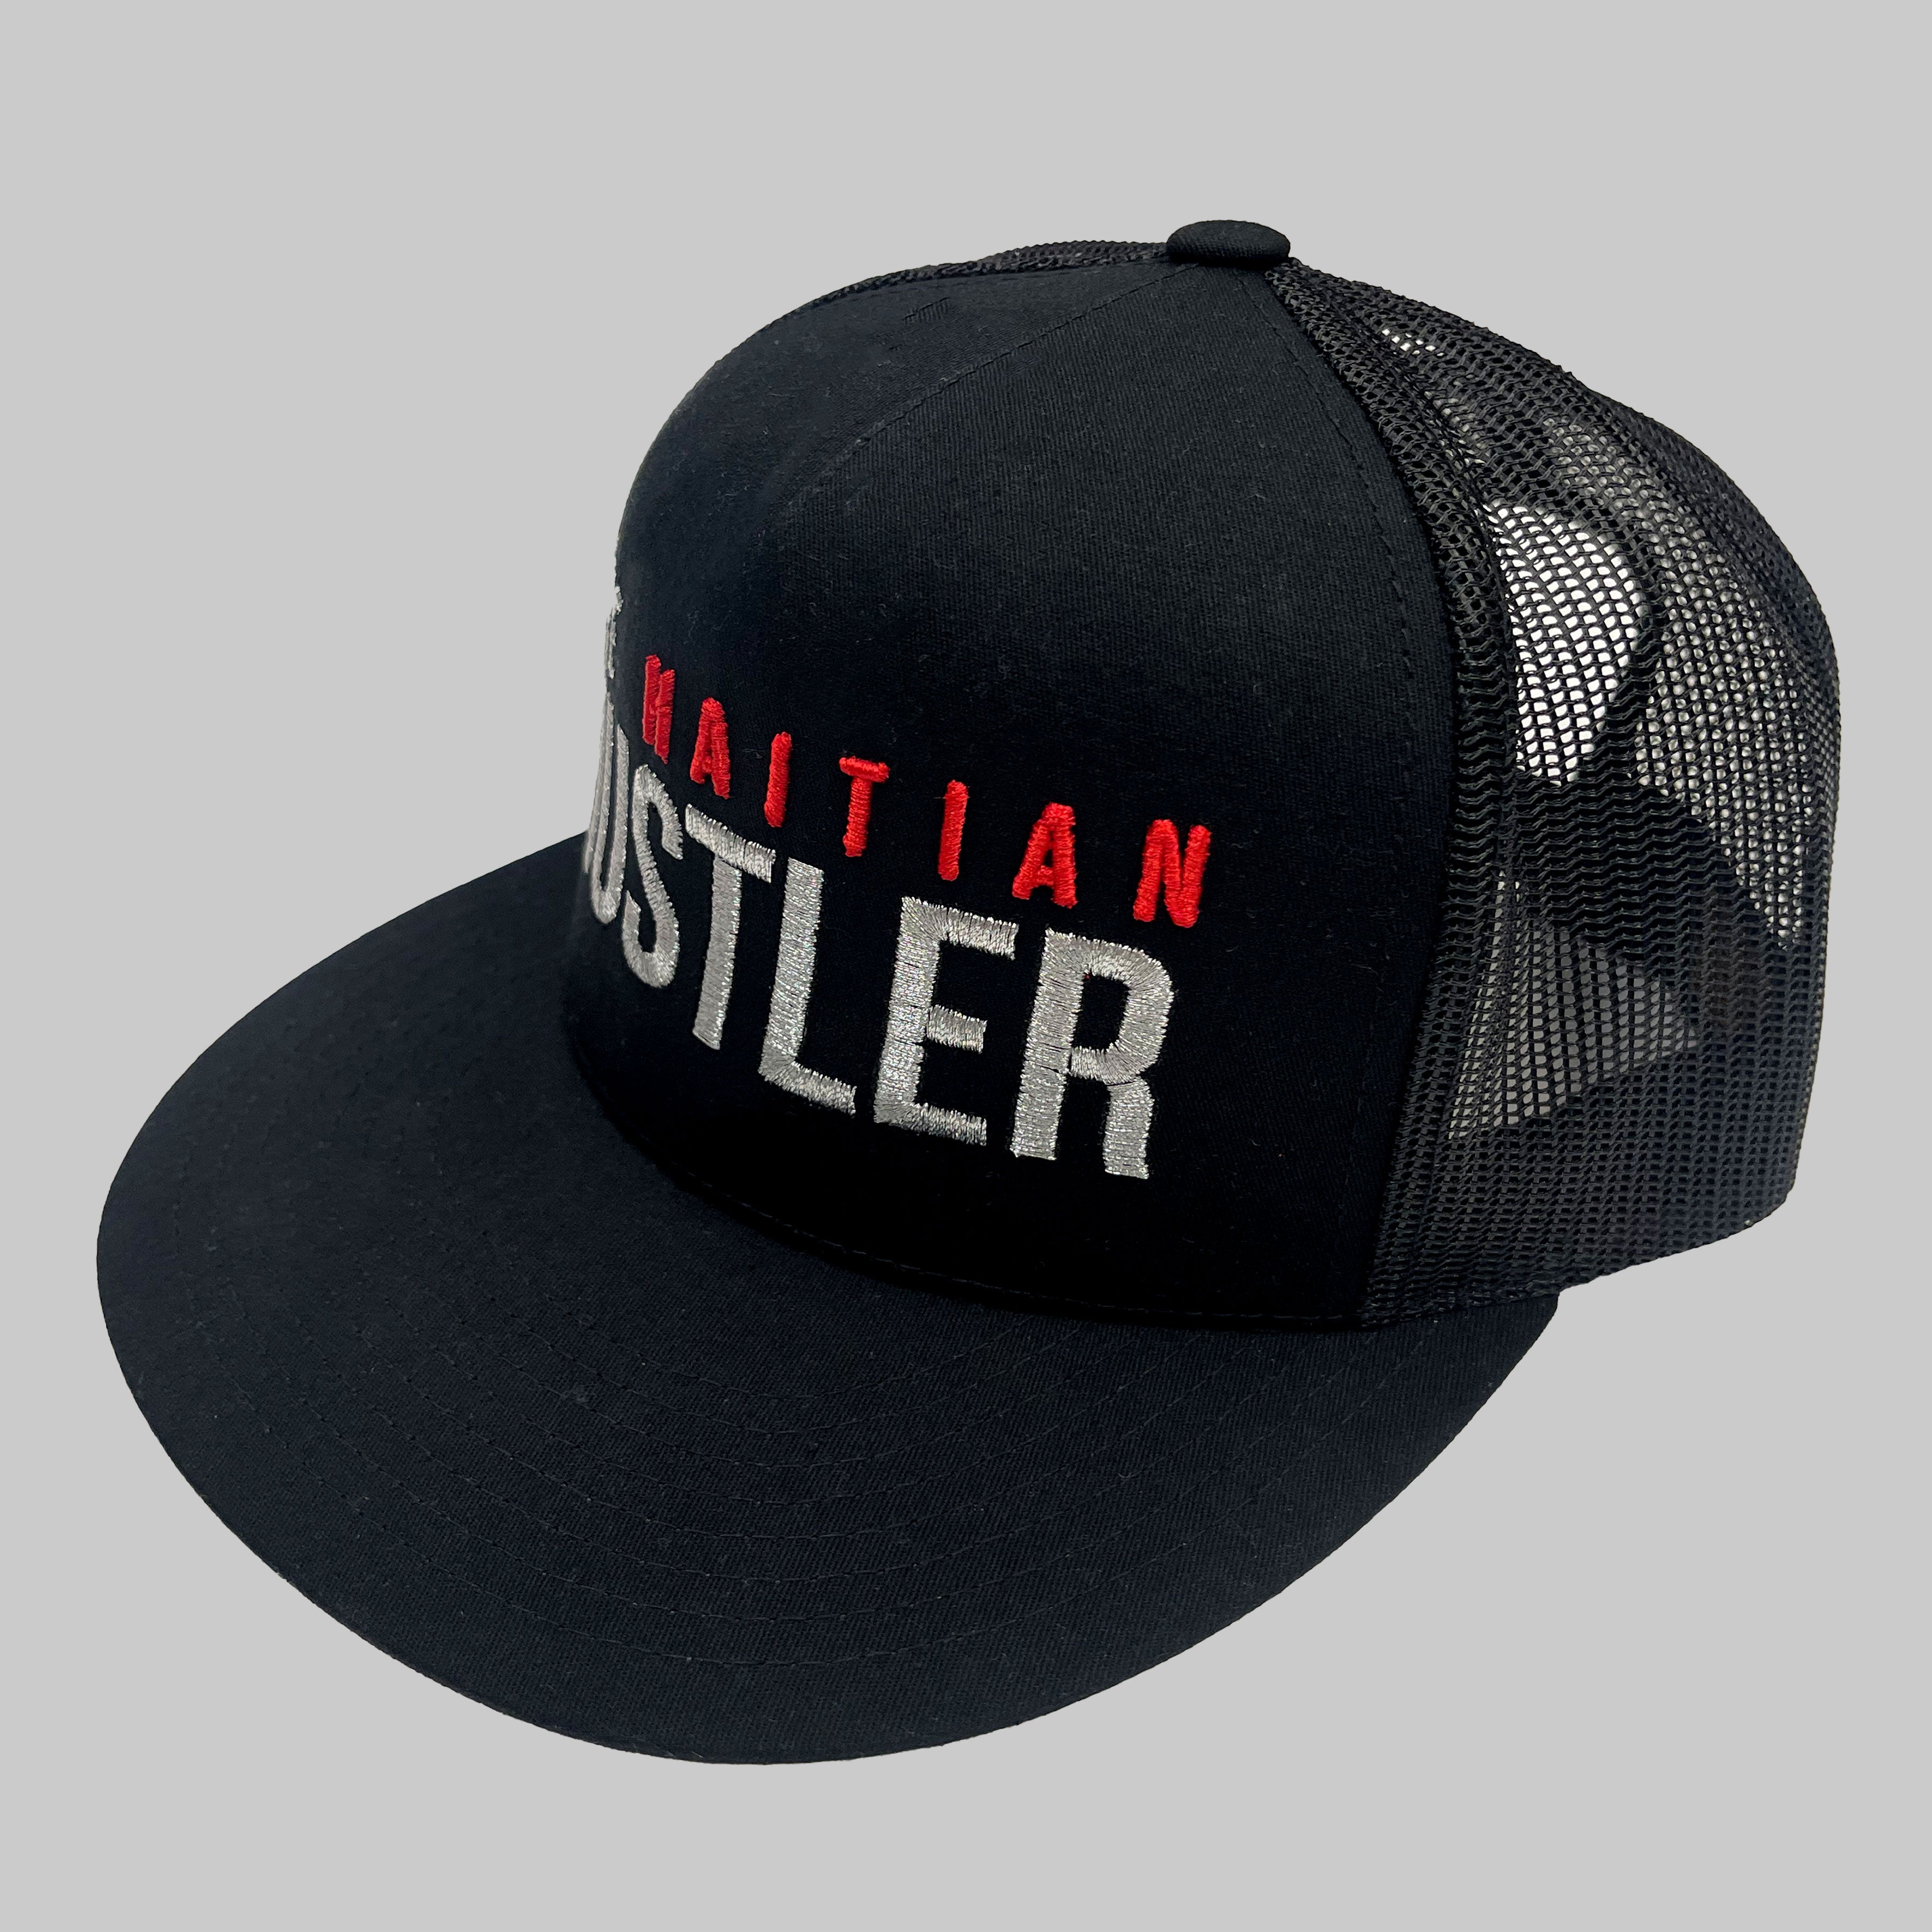 The Haitian Hustler Trucker Hat